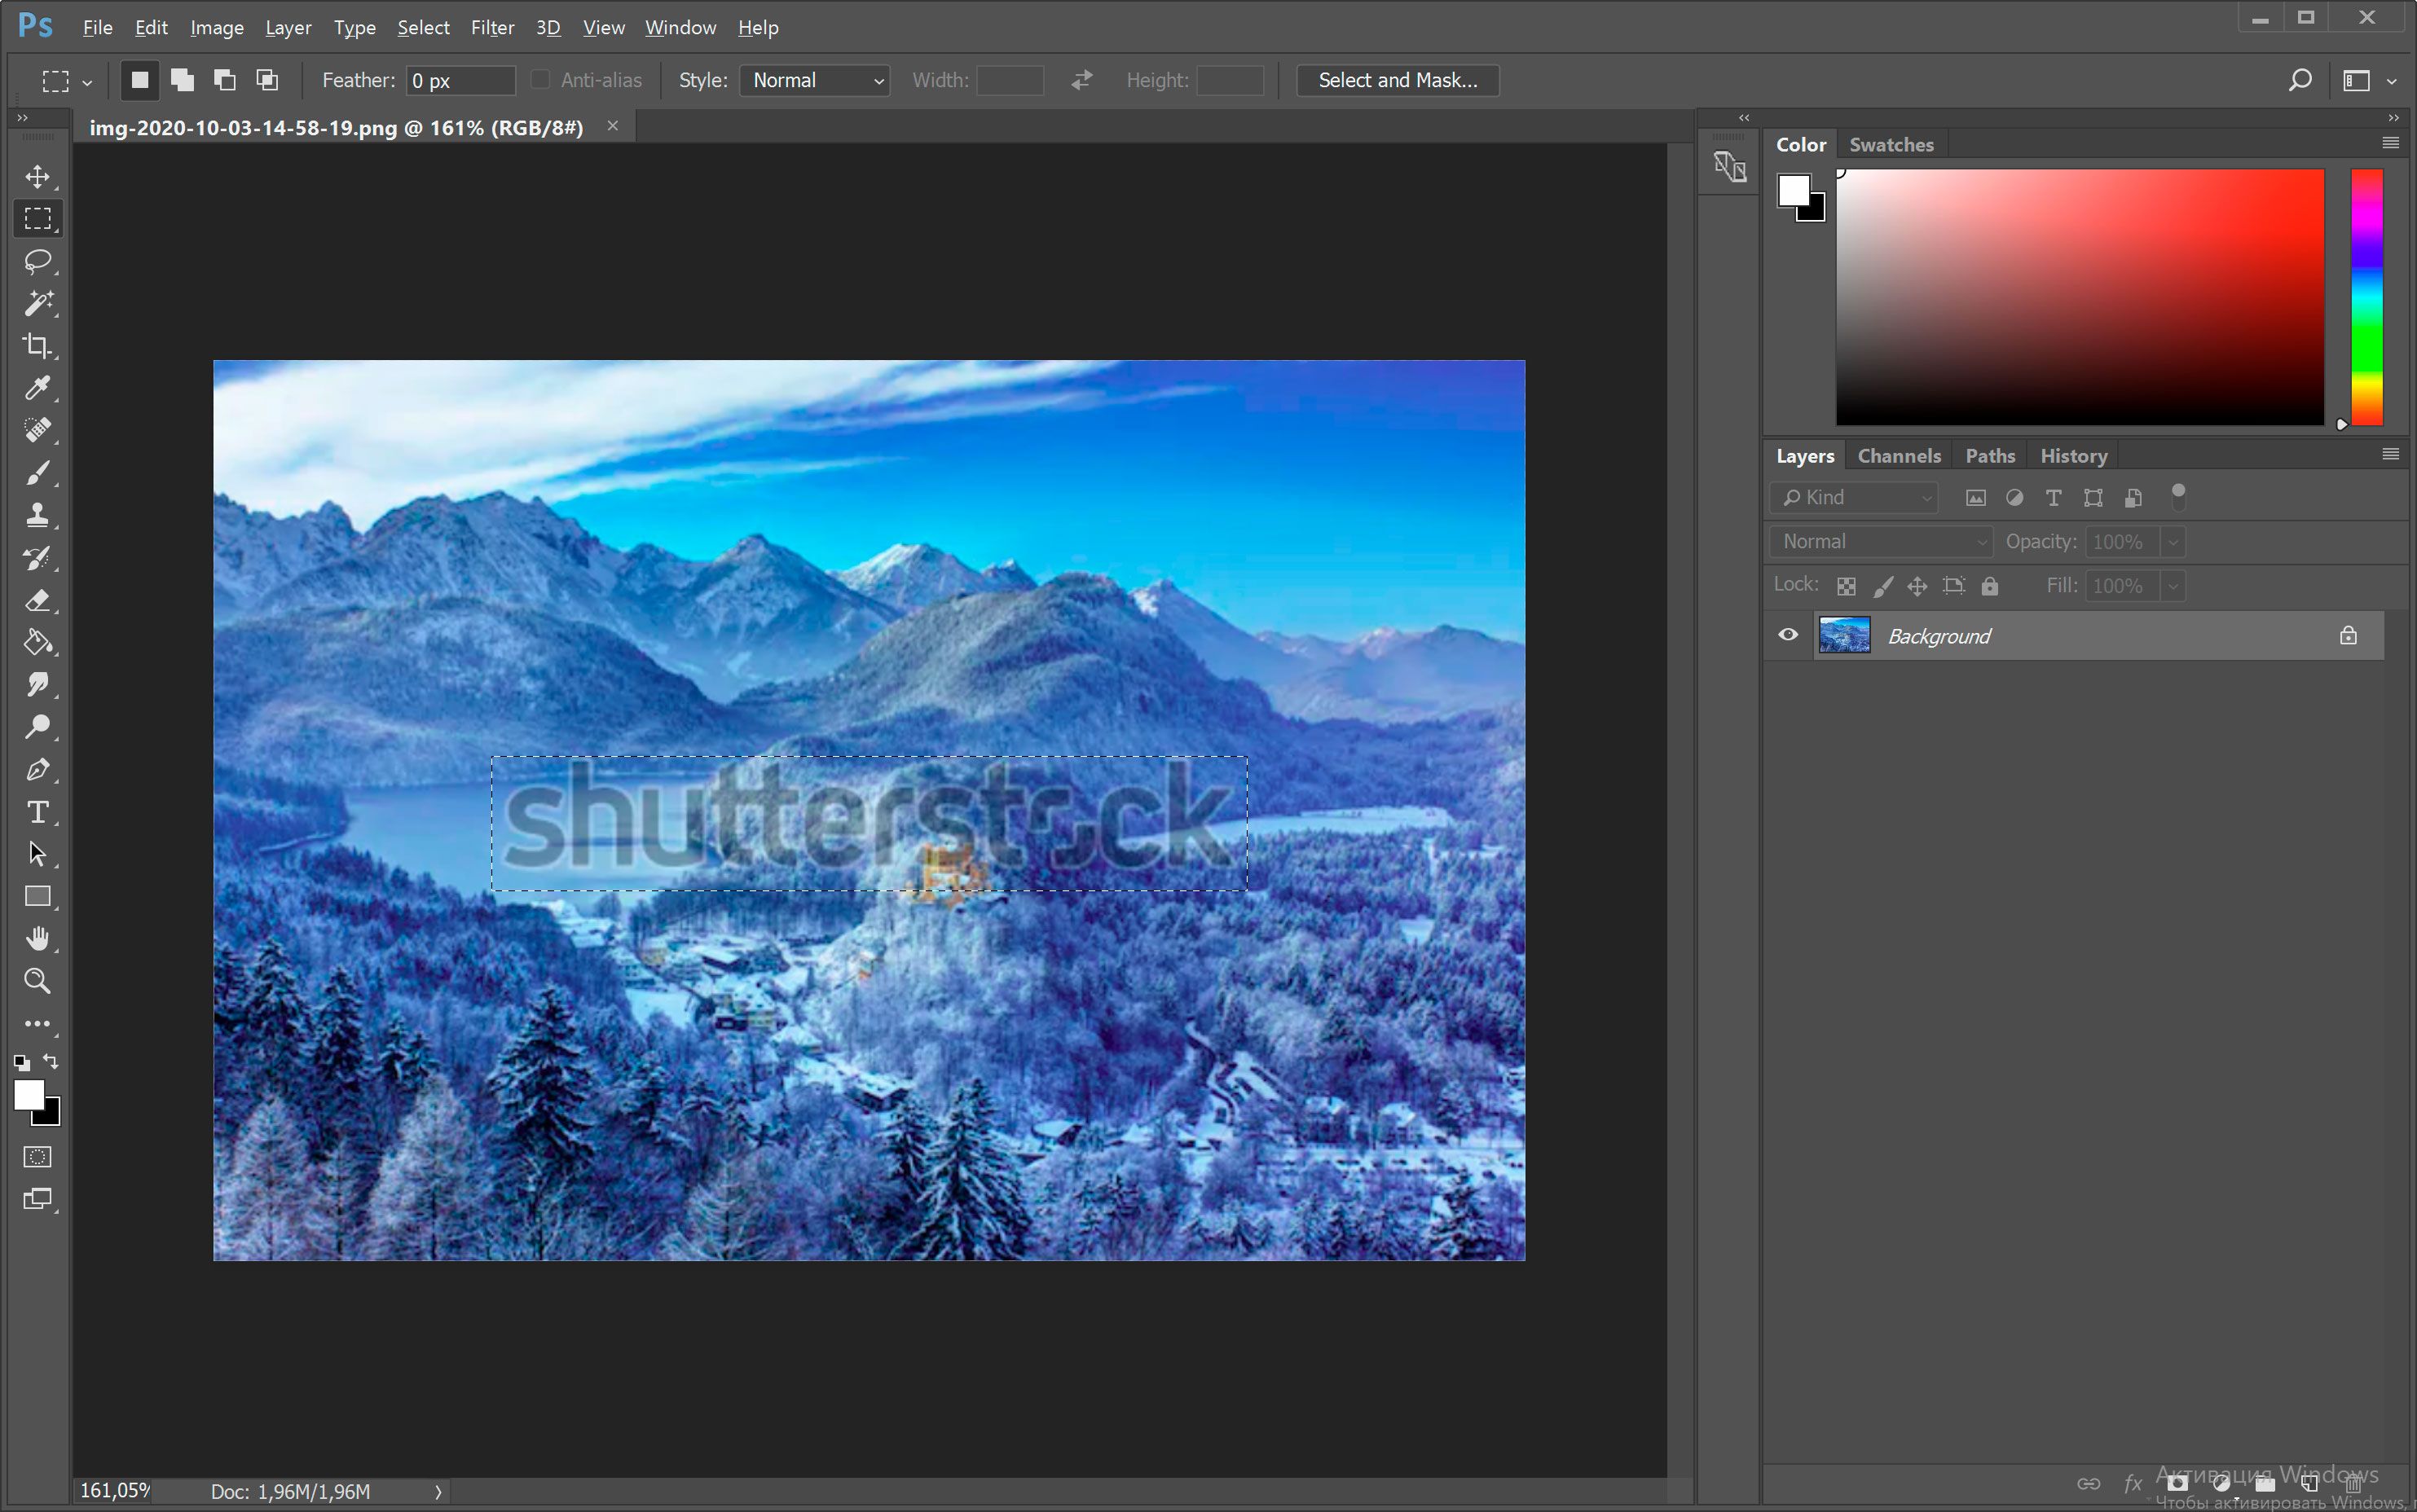 Open de afbeelding met het Shutterstock-watermerk in Photoshop..